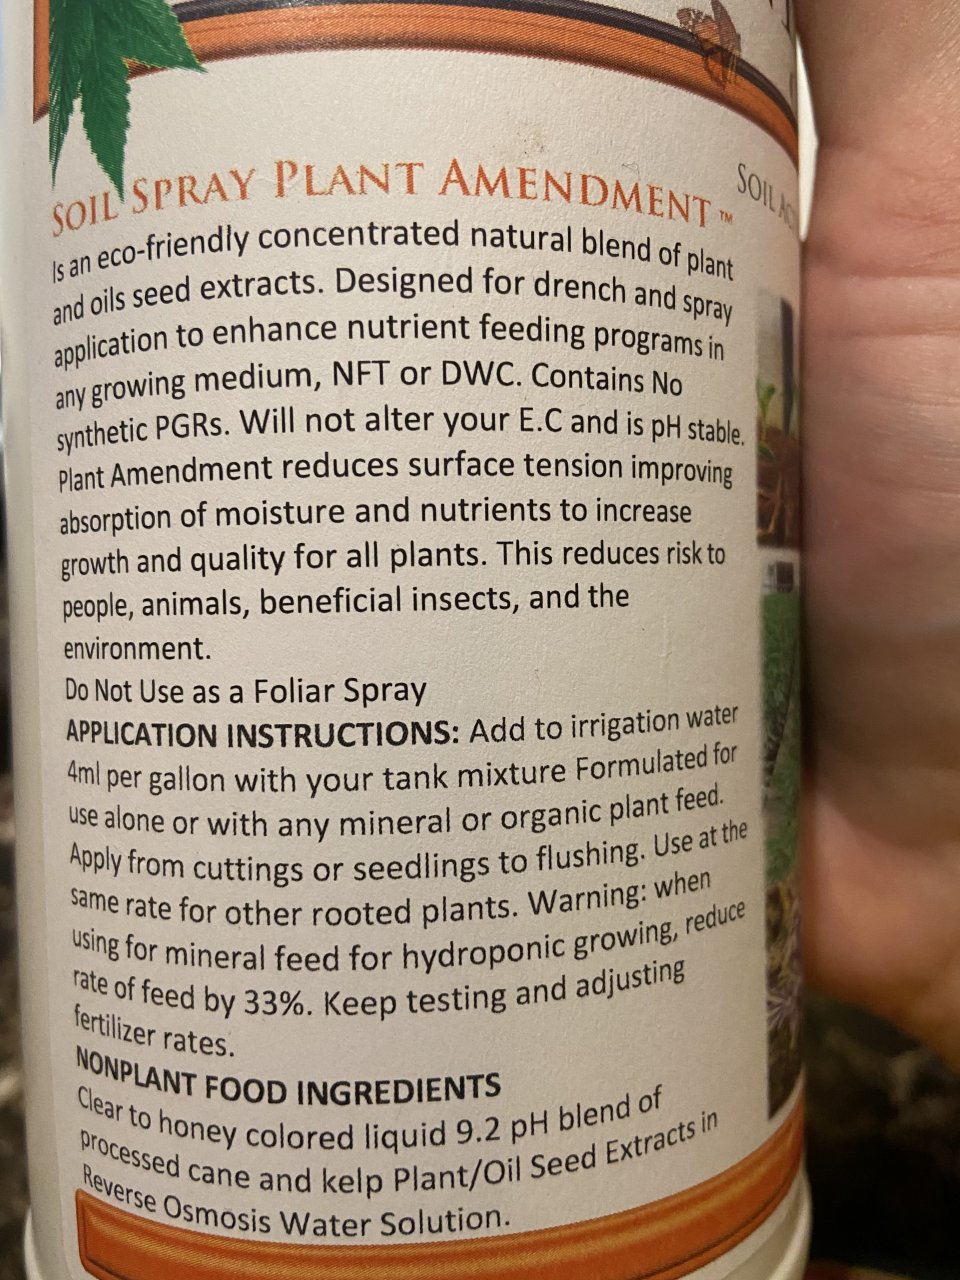 Plant amendment